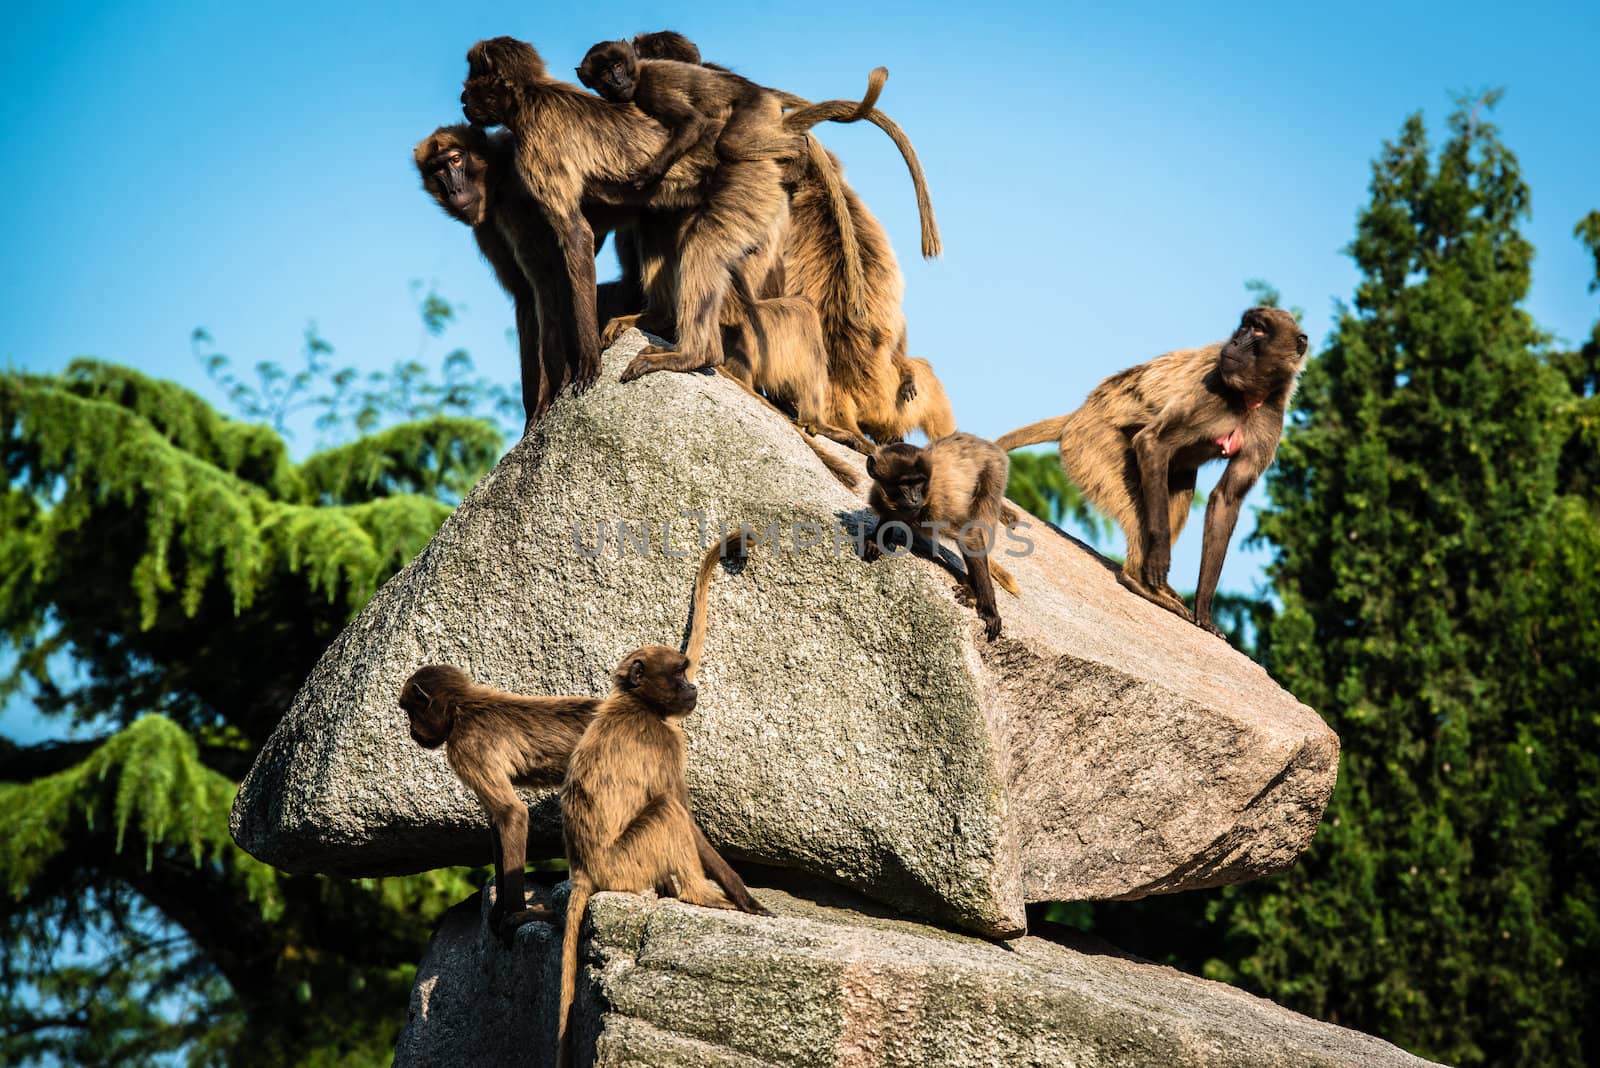 baboon monkeys sitting on a rock in bright sunlight in a zoo